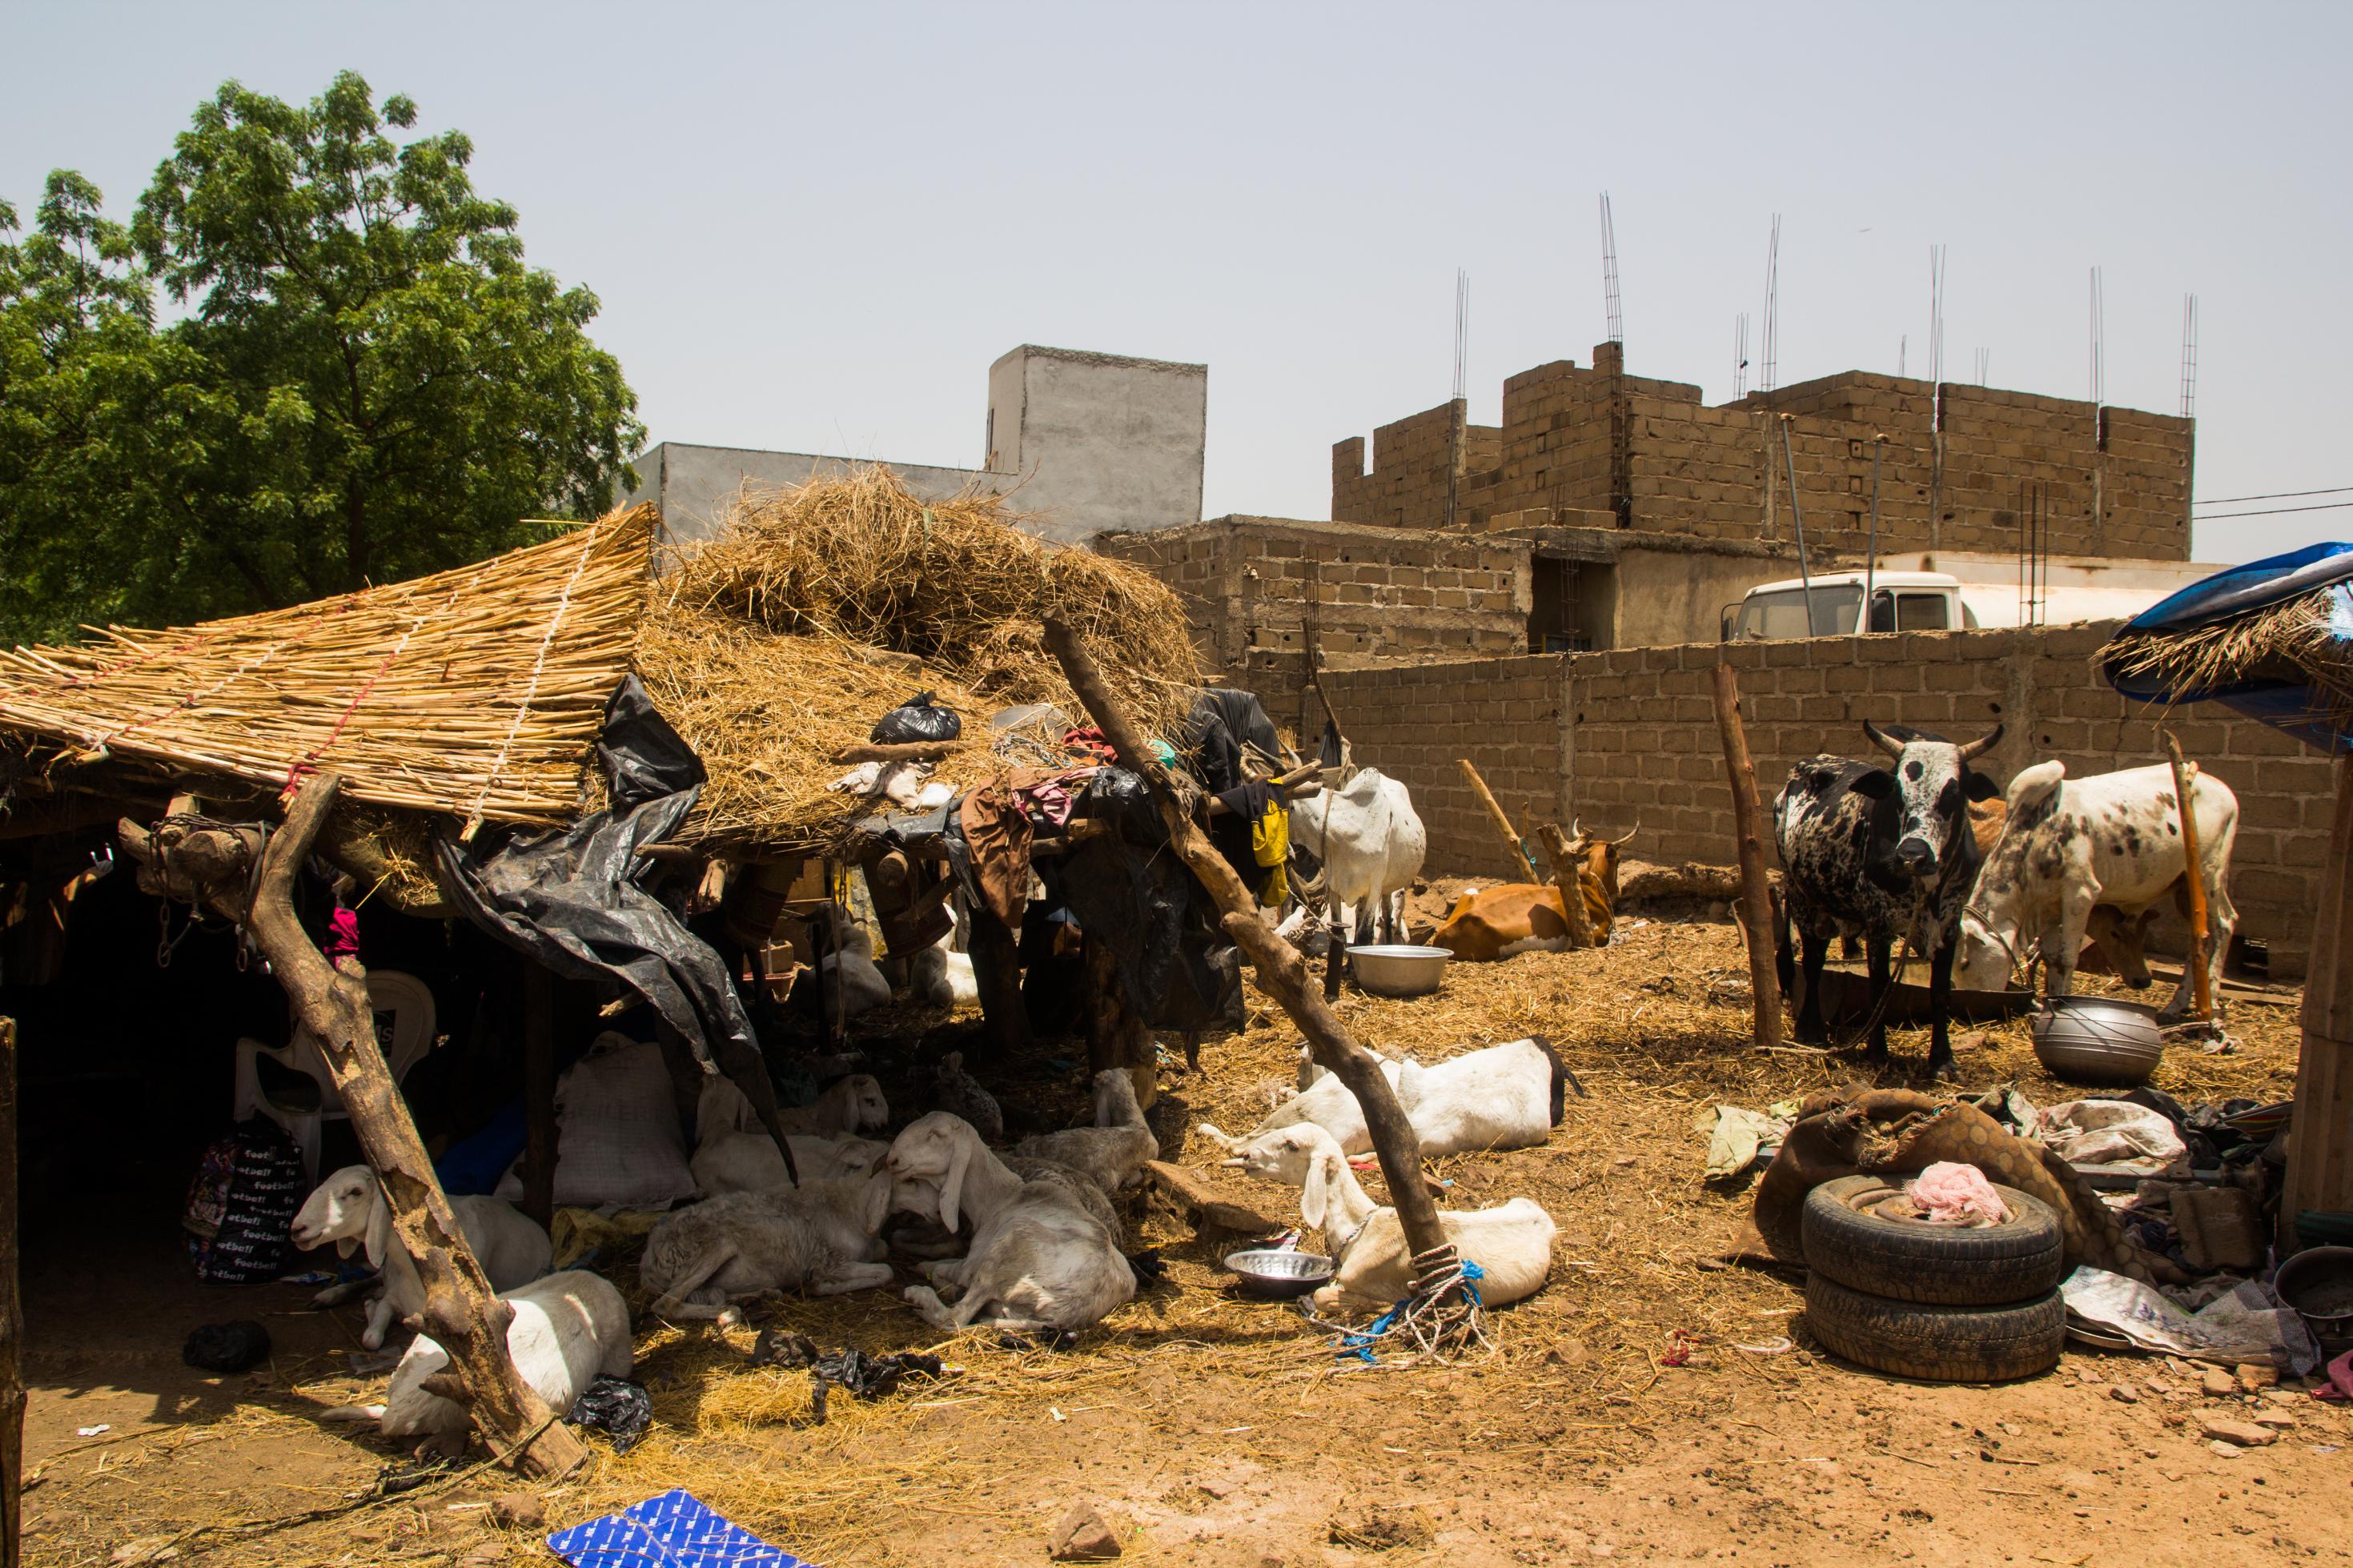 Kühe und Schafe sind auf einem Viehmarkt in Mali. Die Schafe liegen unter einer Überdachung aus Stroh und Ästen.